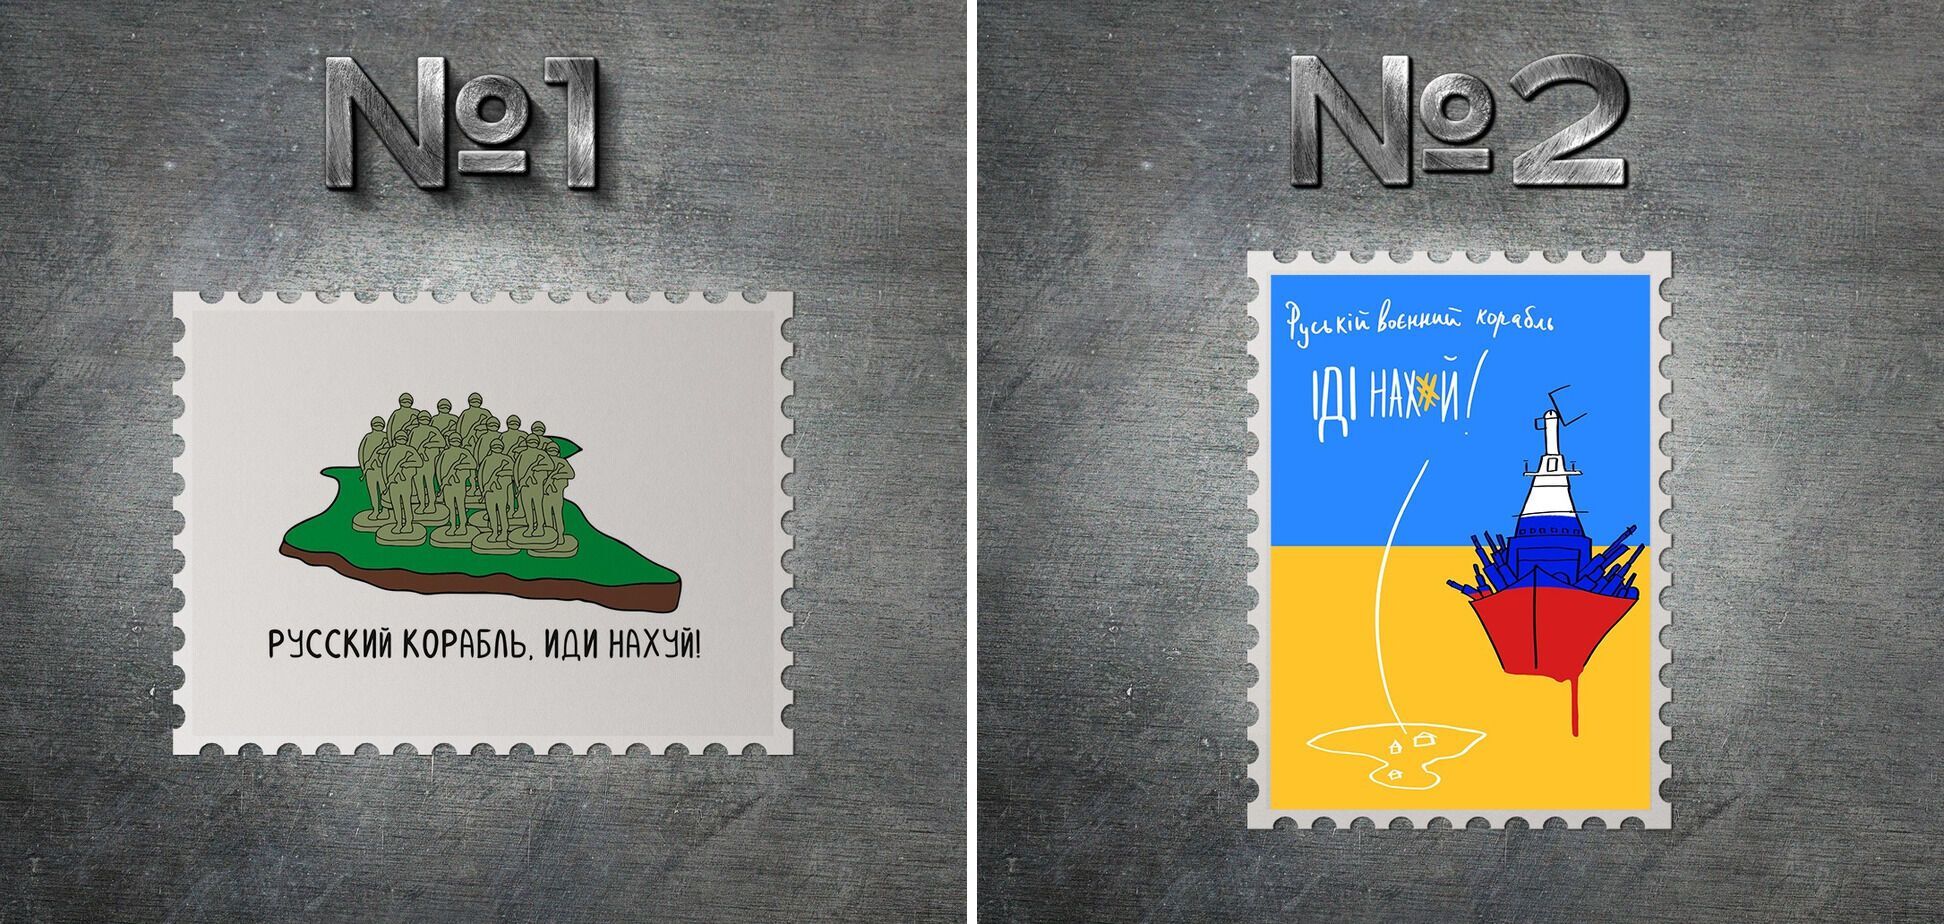 Укрпочта опубликовала эскизы почтовых марок на тему "Русский военный корабль, иди на*уй". Фото